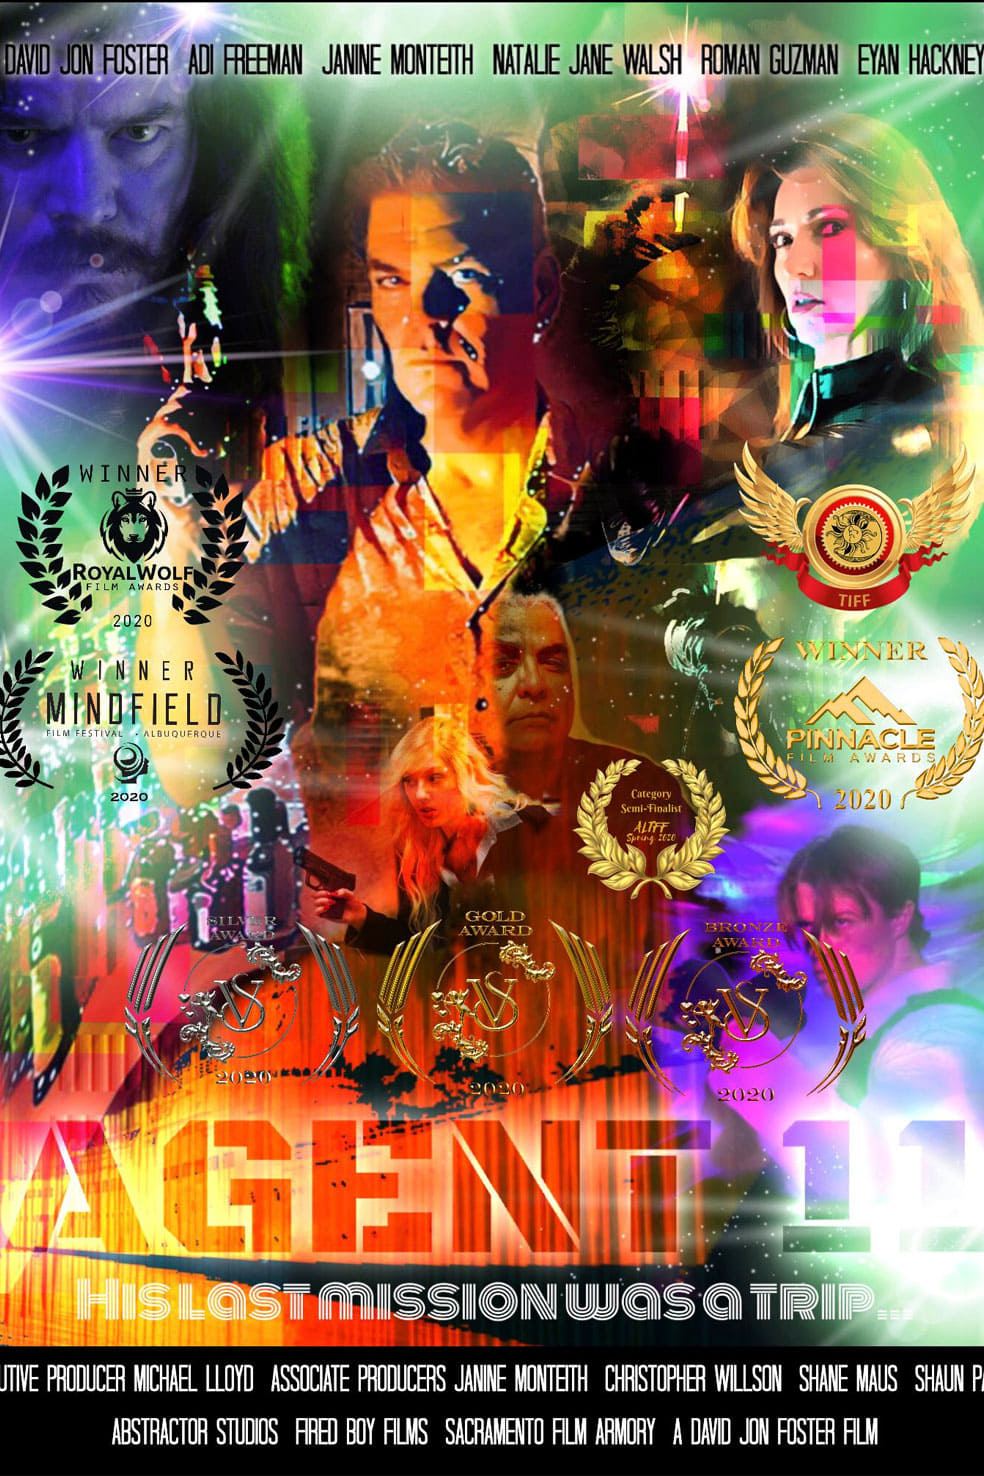 Agent 11